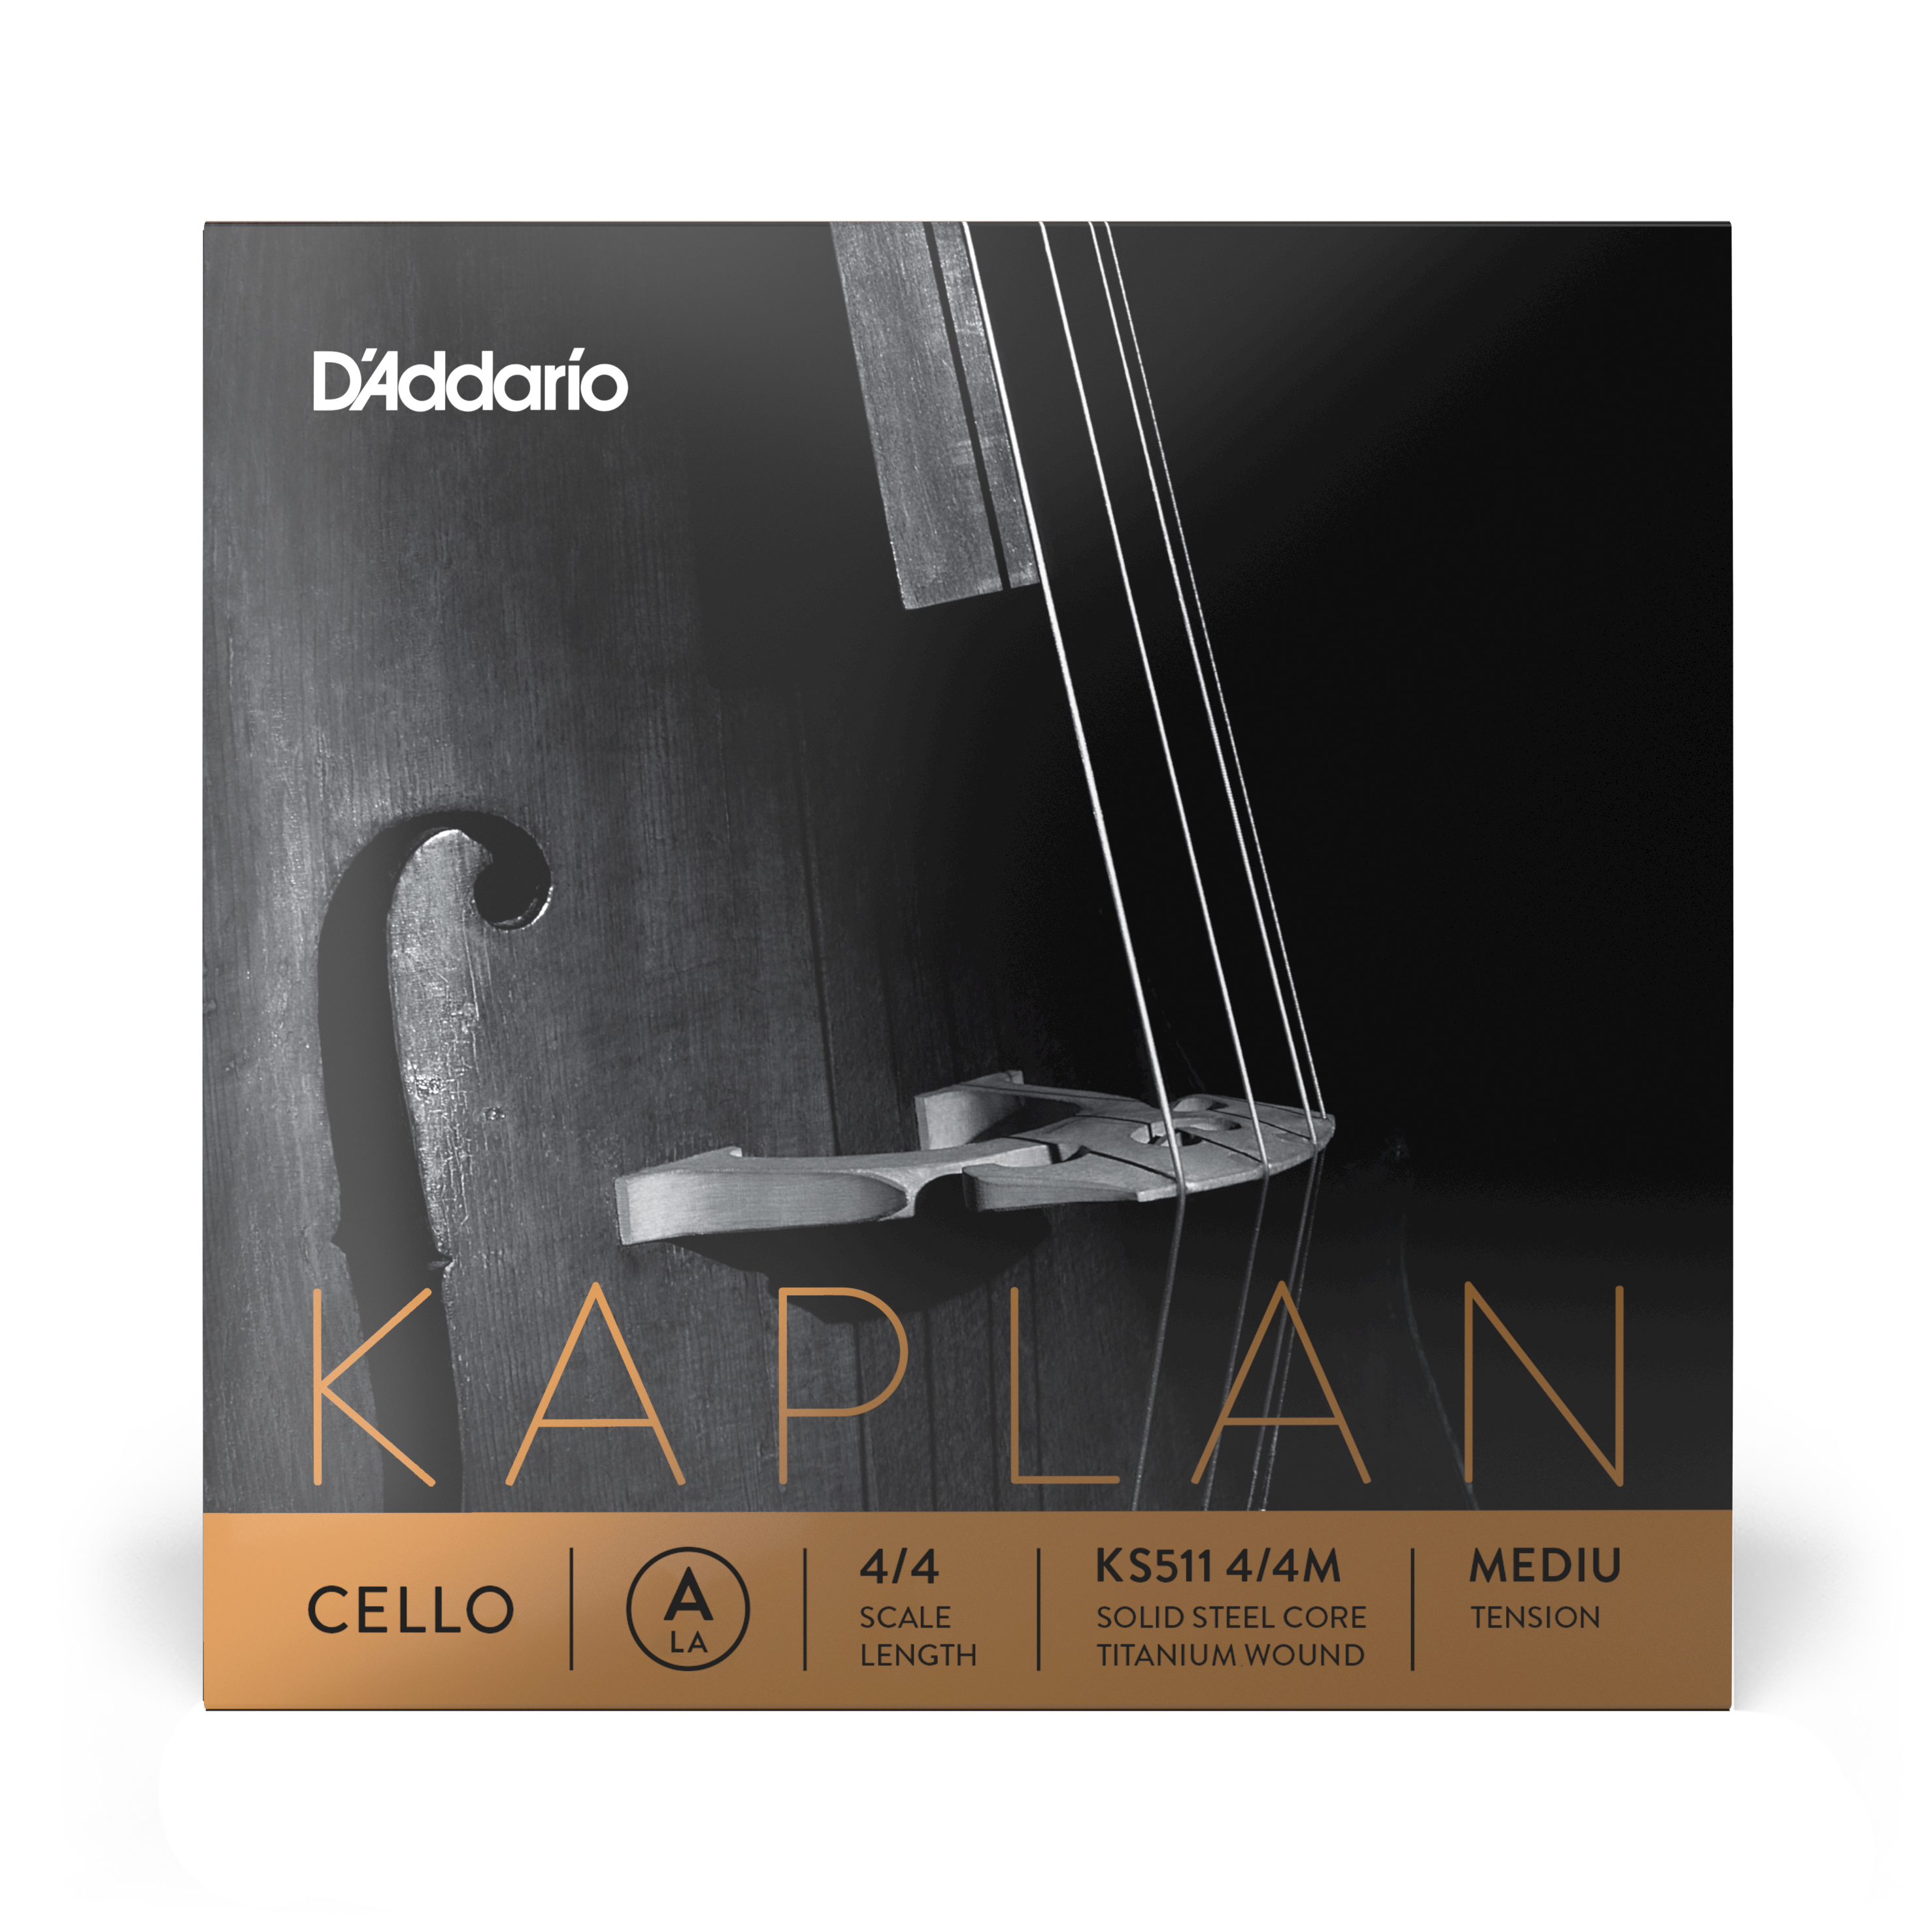 Daddario orchestral it Ks511 4/4m corda singola la d'addario kaplan per violoncello, scala 4/4, tensione media